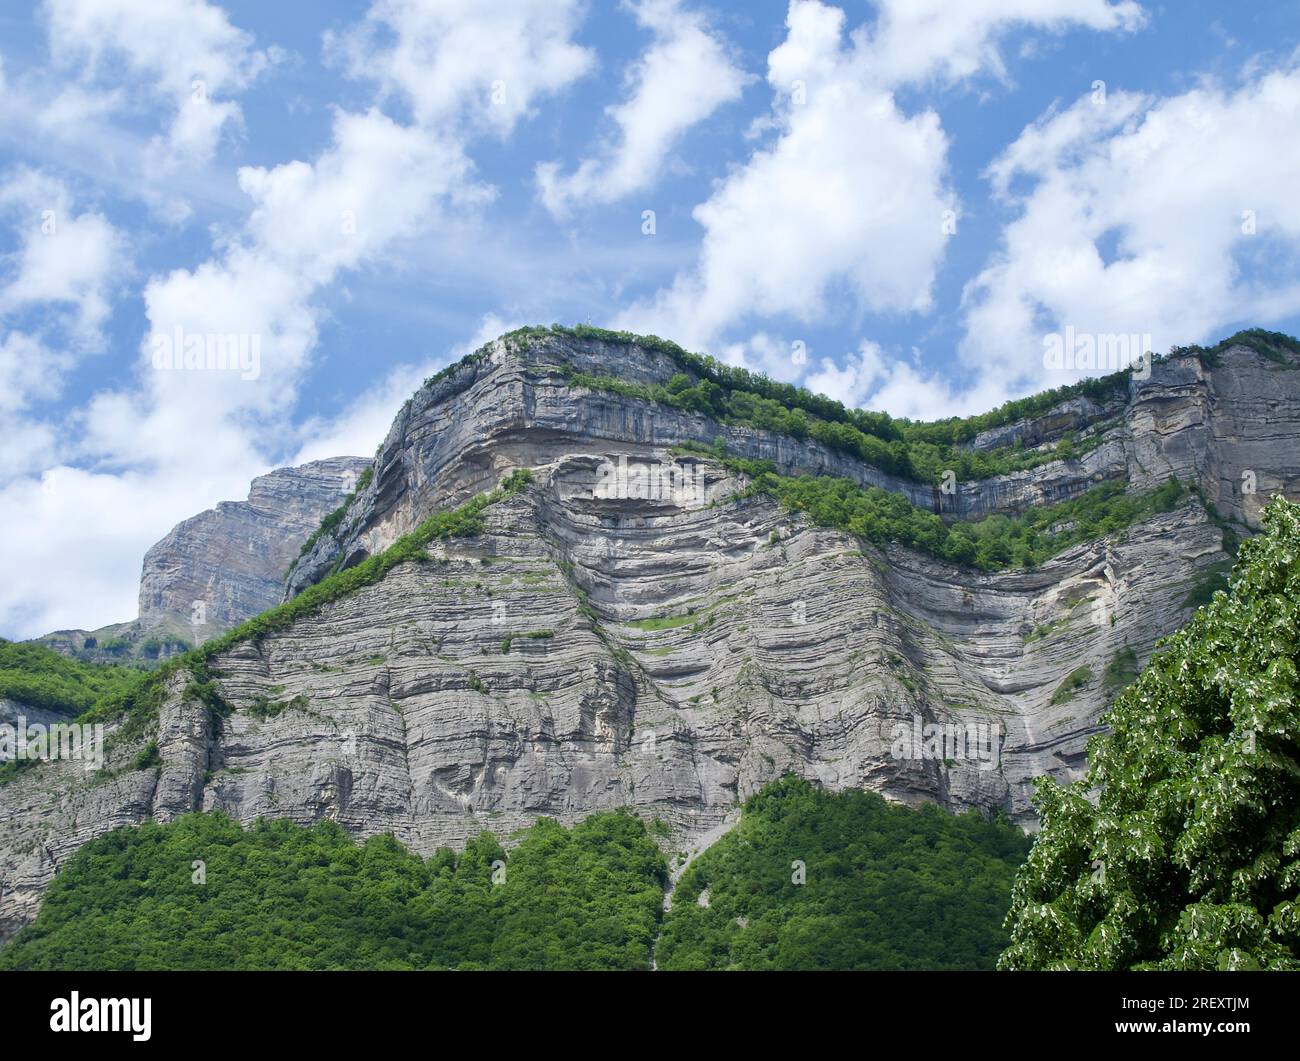 Massif de la Chartreuse à proximité de la ville française Grenoble avec ciel bleu et nuages. Banque D'Images